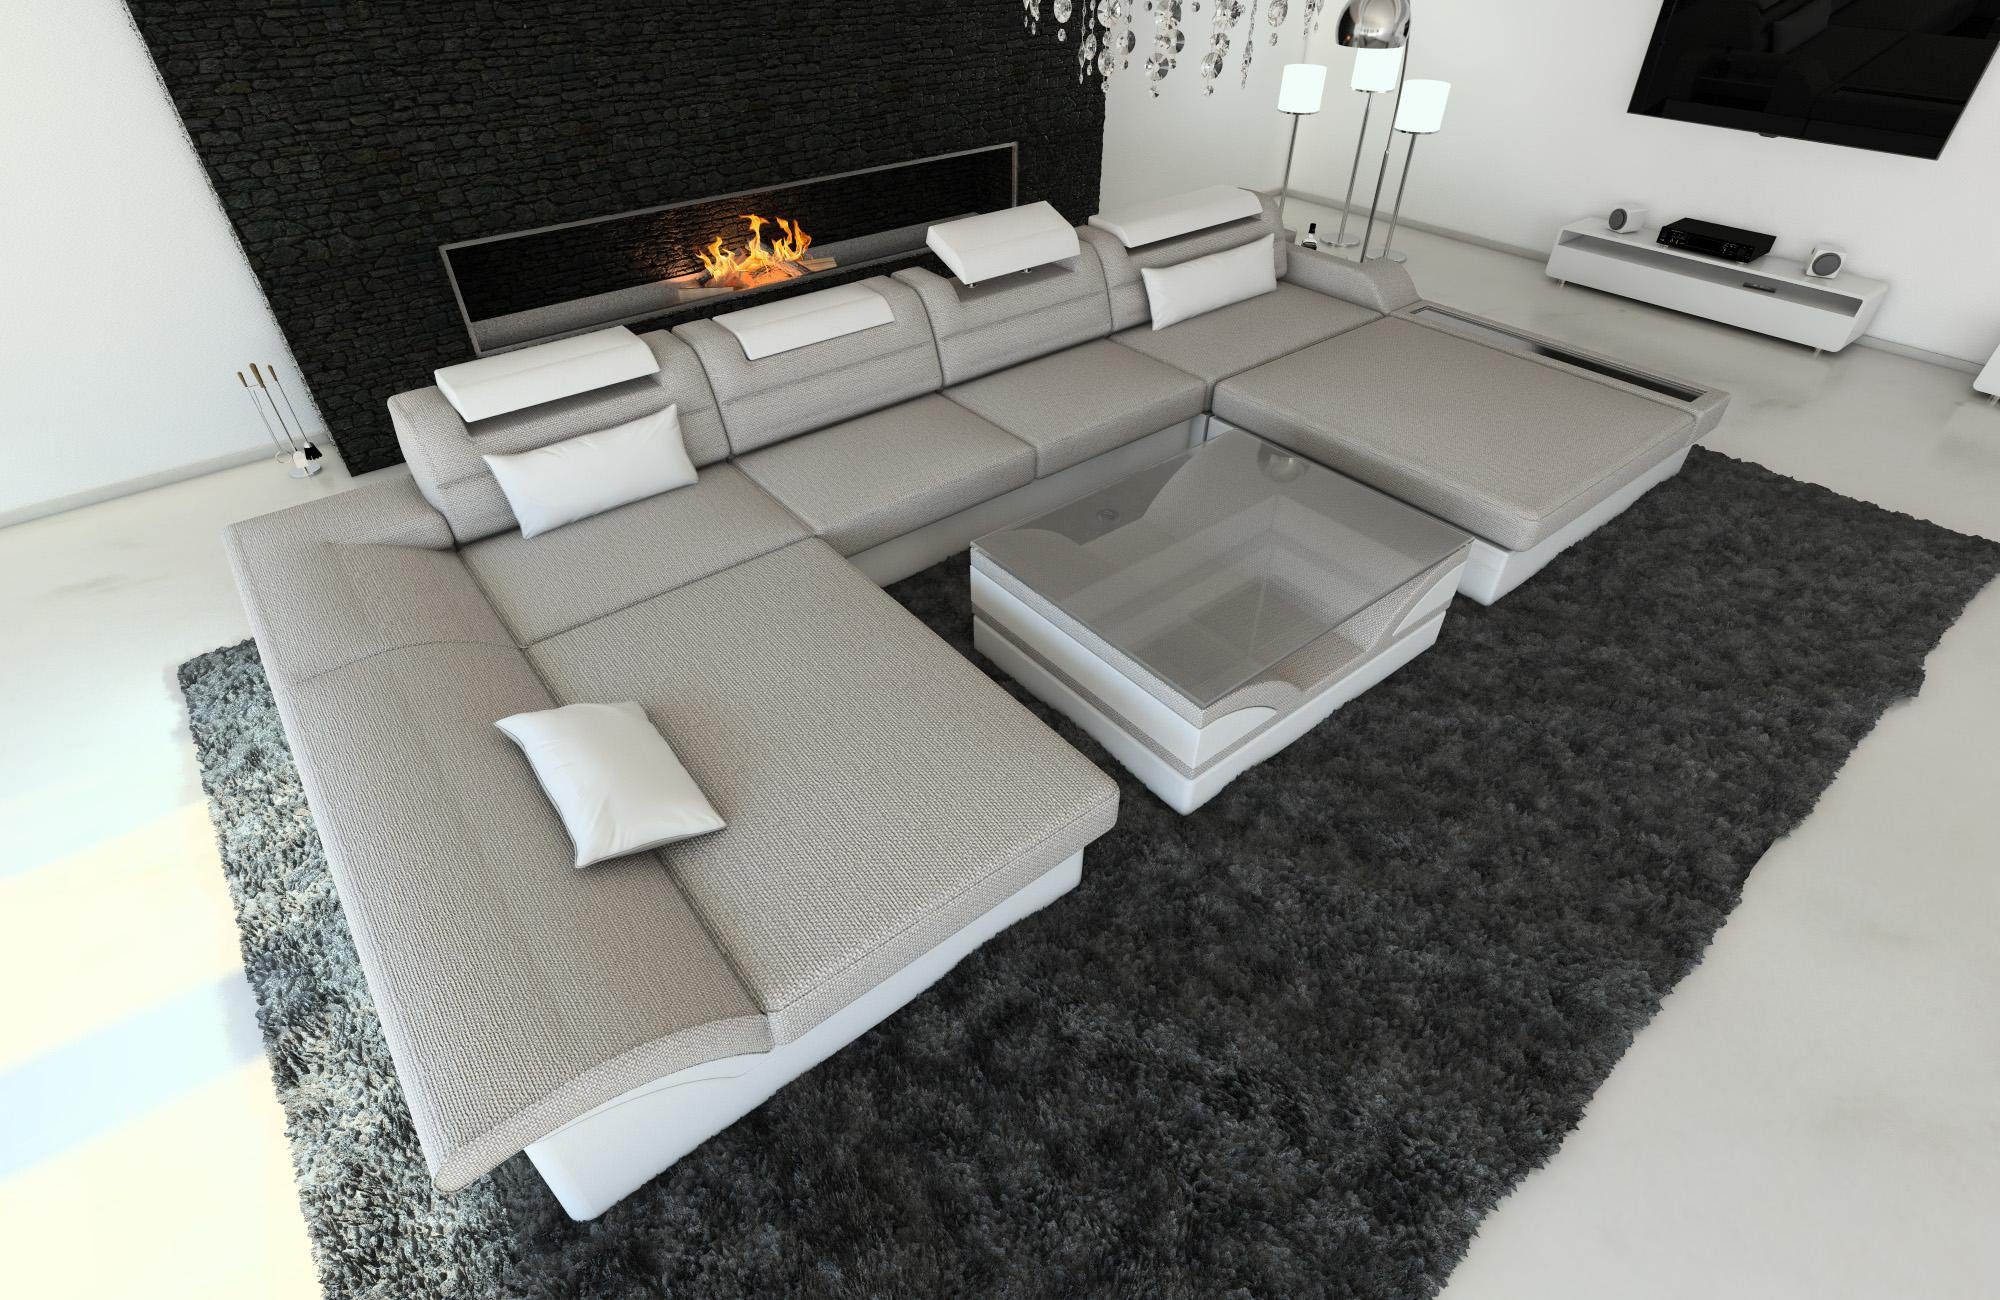 mit Sofa Dreams Monza Bettfunktion, Form U Wohnlandschaft LED, Stoff Polster Stoffsofa, Designersofa H2 ausziehbare Macchiato-Weiss Couch